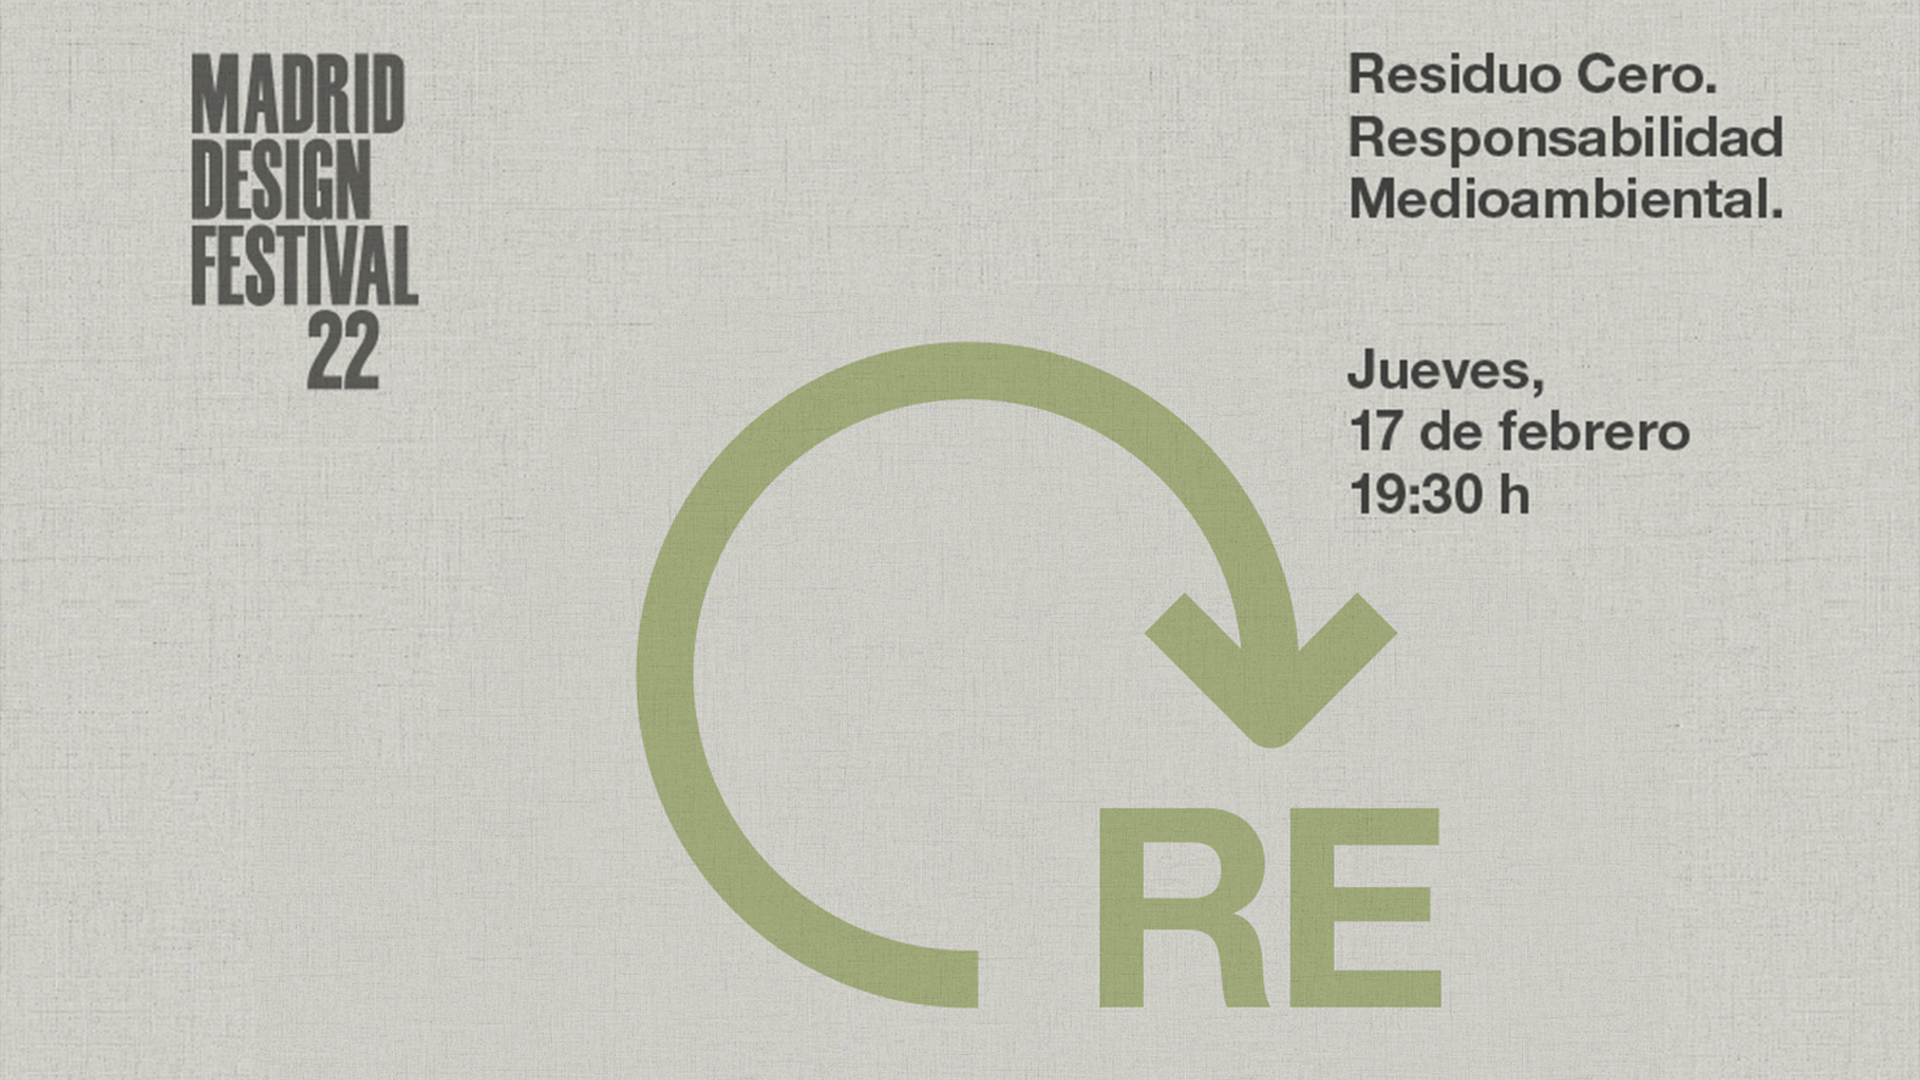 Andreu World, Ecoalf y Mini se encuentran para hablar sobre Residuo Cero y Responsabilidad Medioambiental en Madrid Design PRO